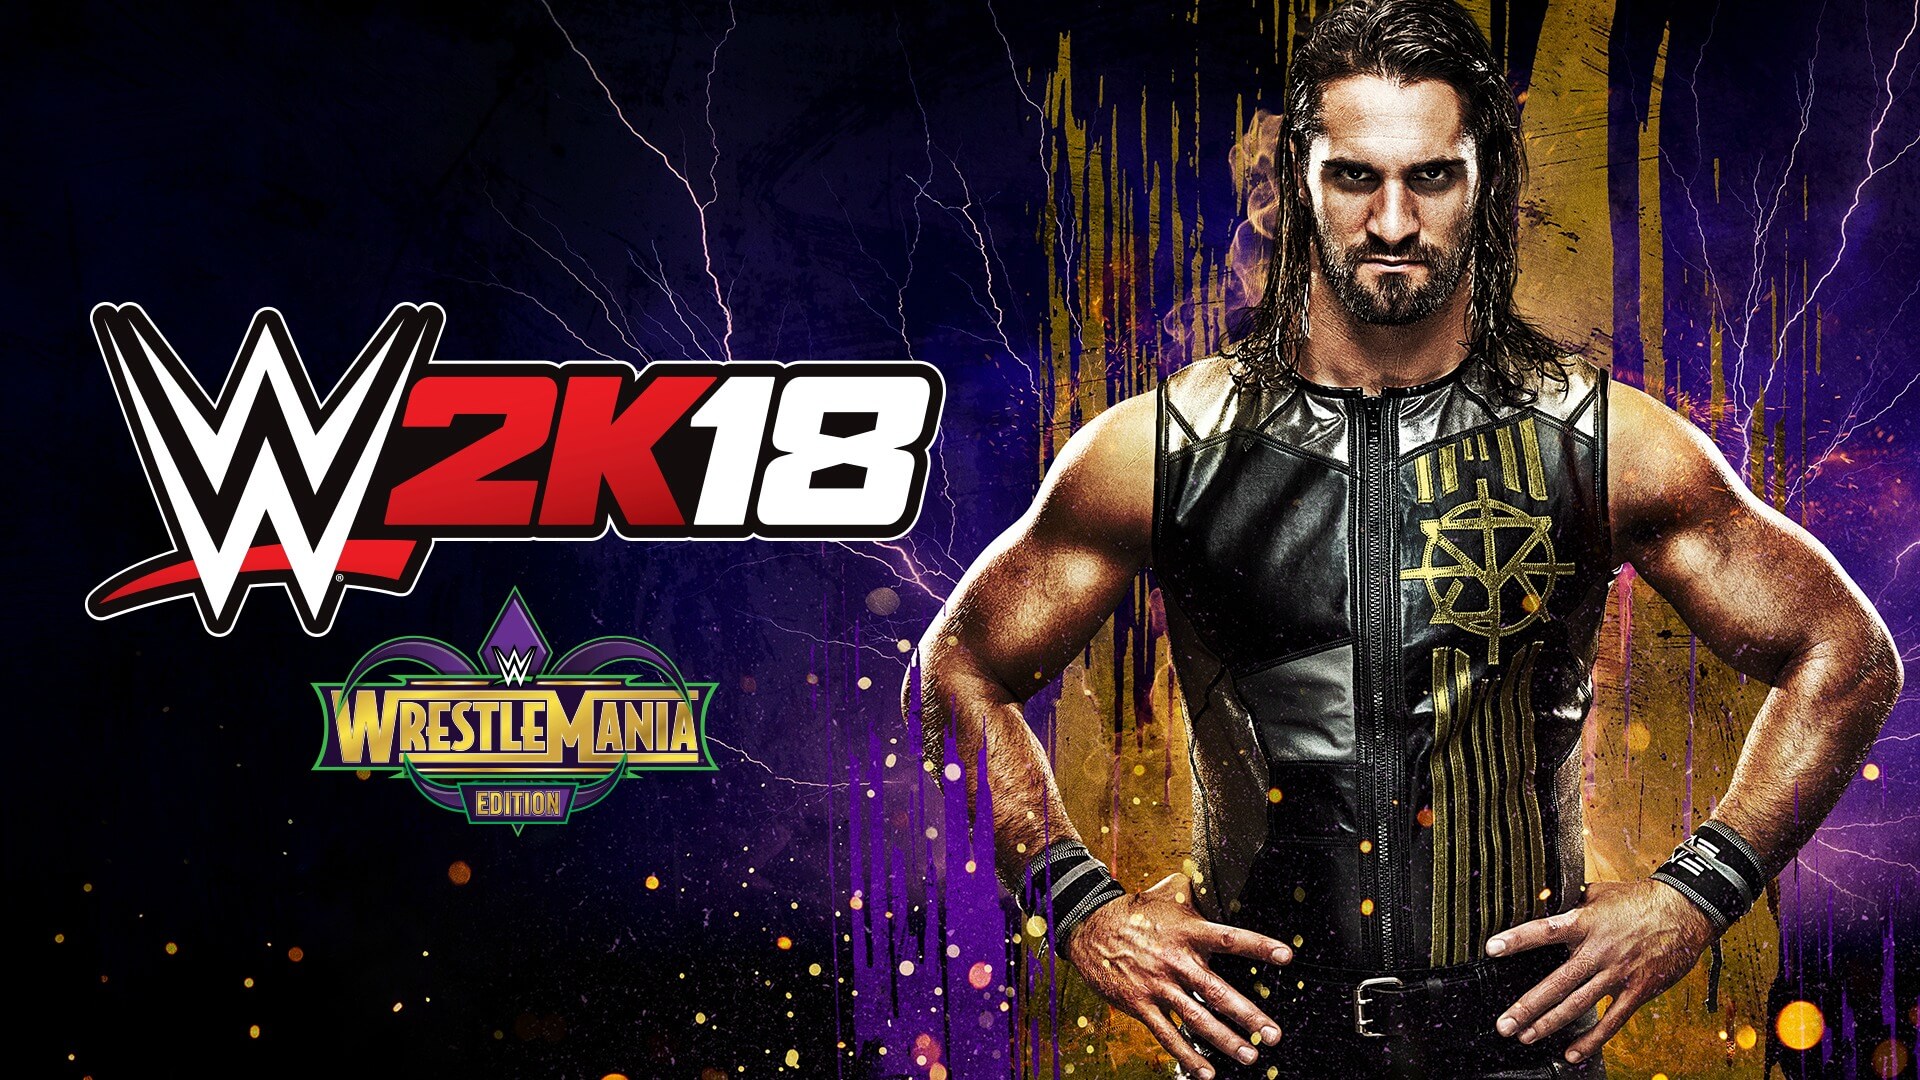 La Edición WrestleMania de WWE 2K18, exclusiva de GAME, ya está disponible | Nuevo tráiler